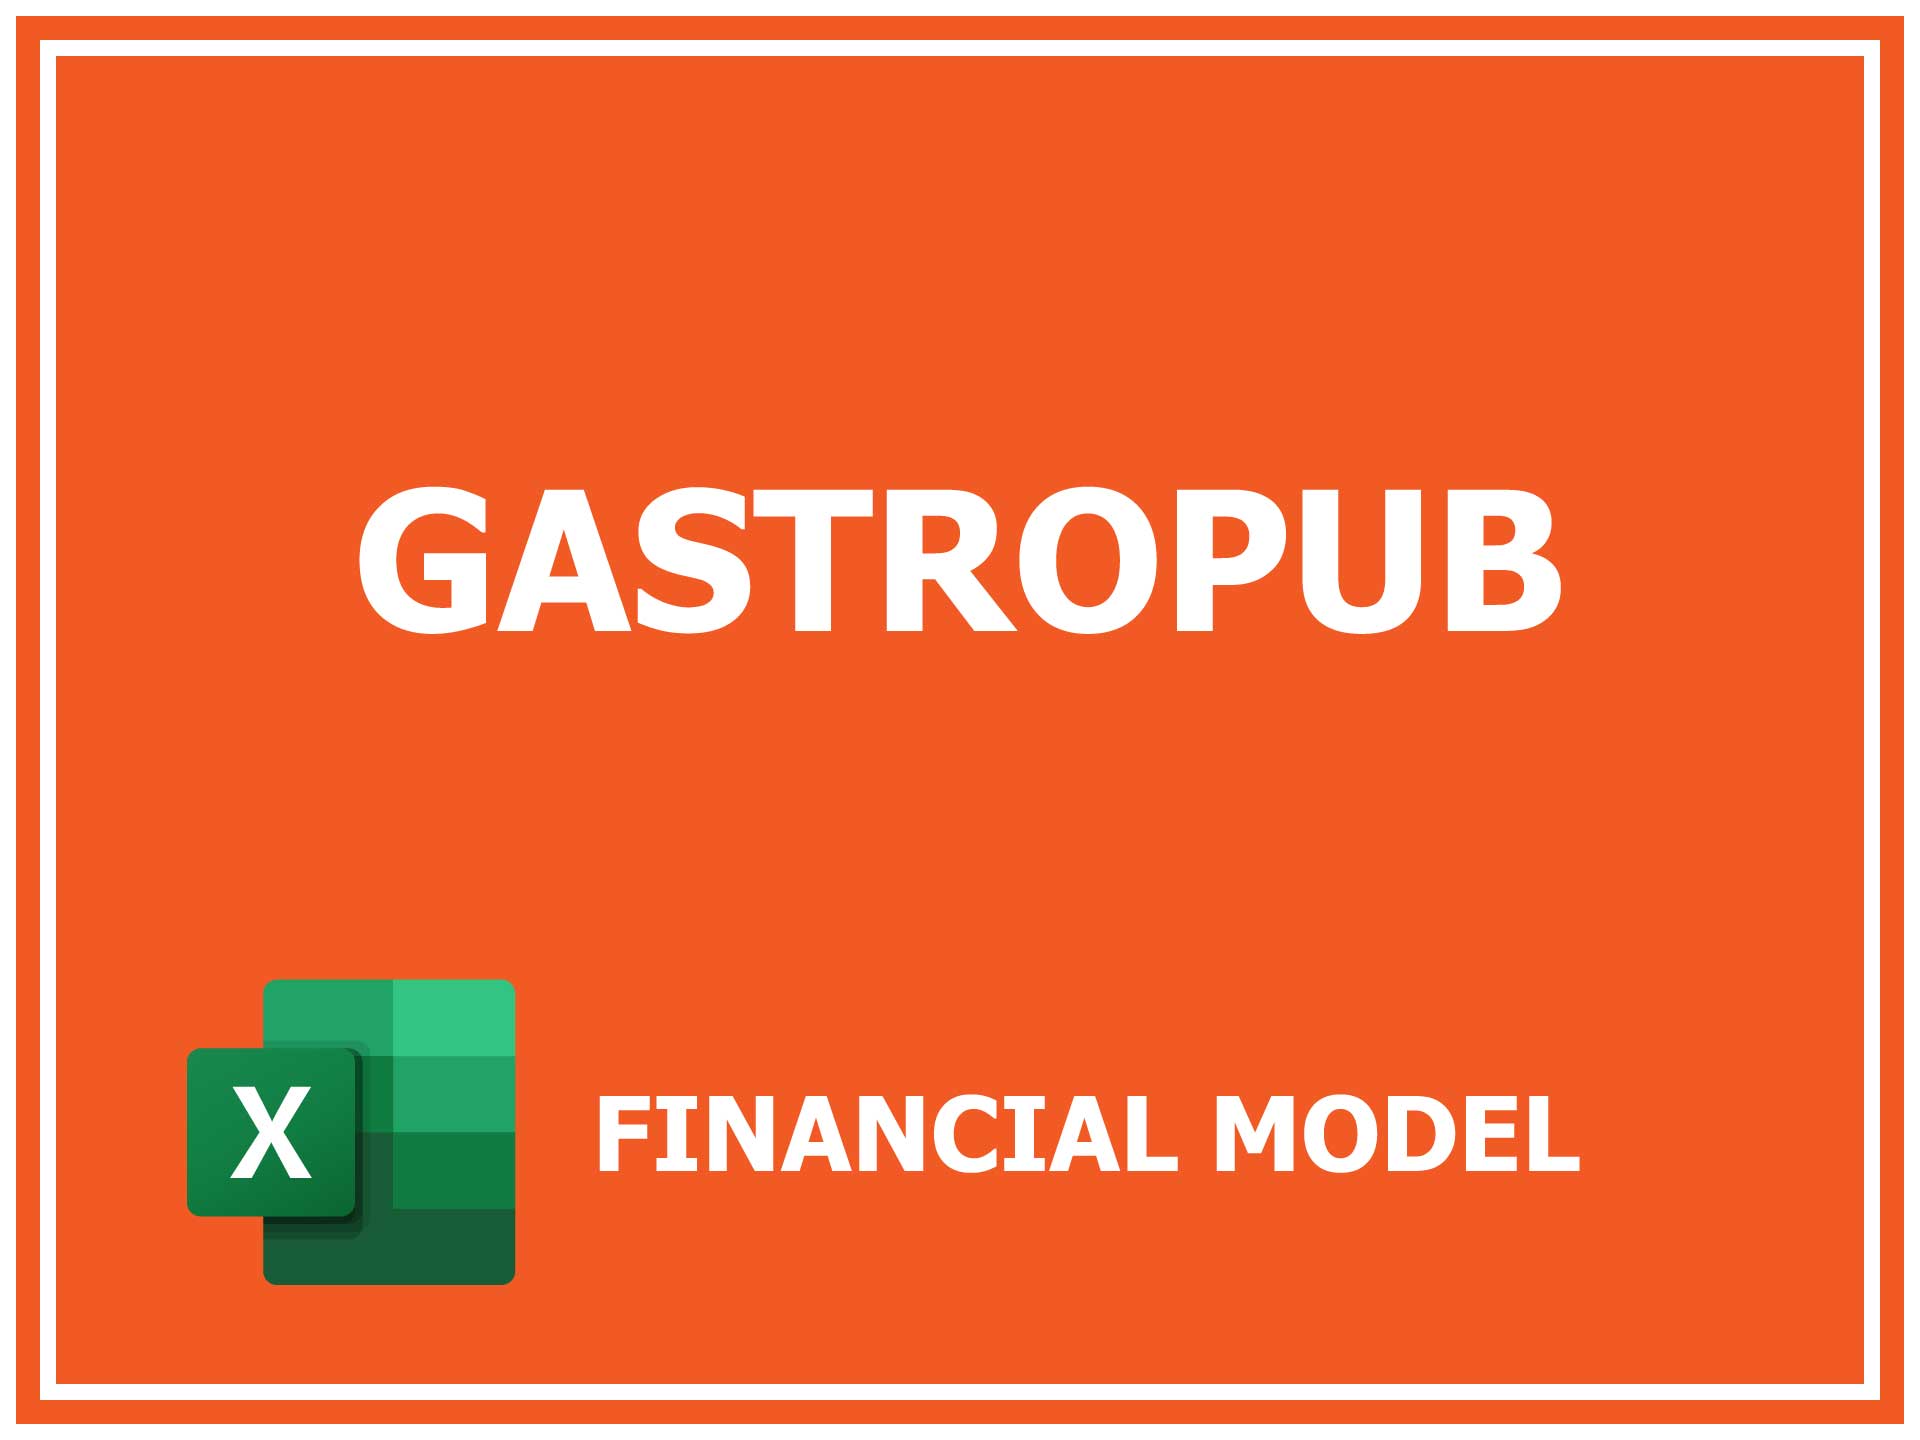 Gastropub